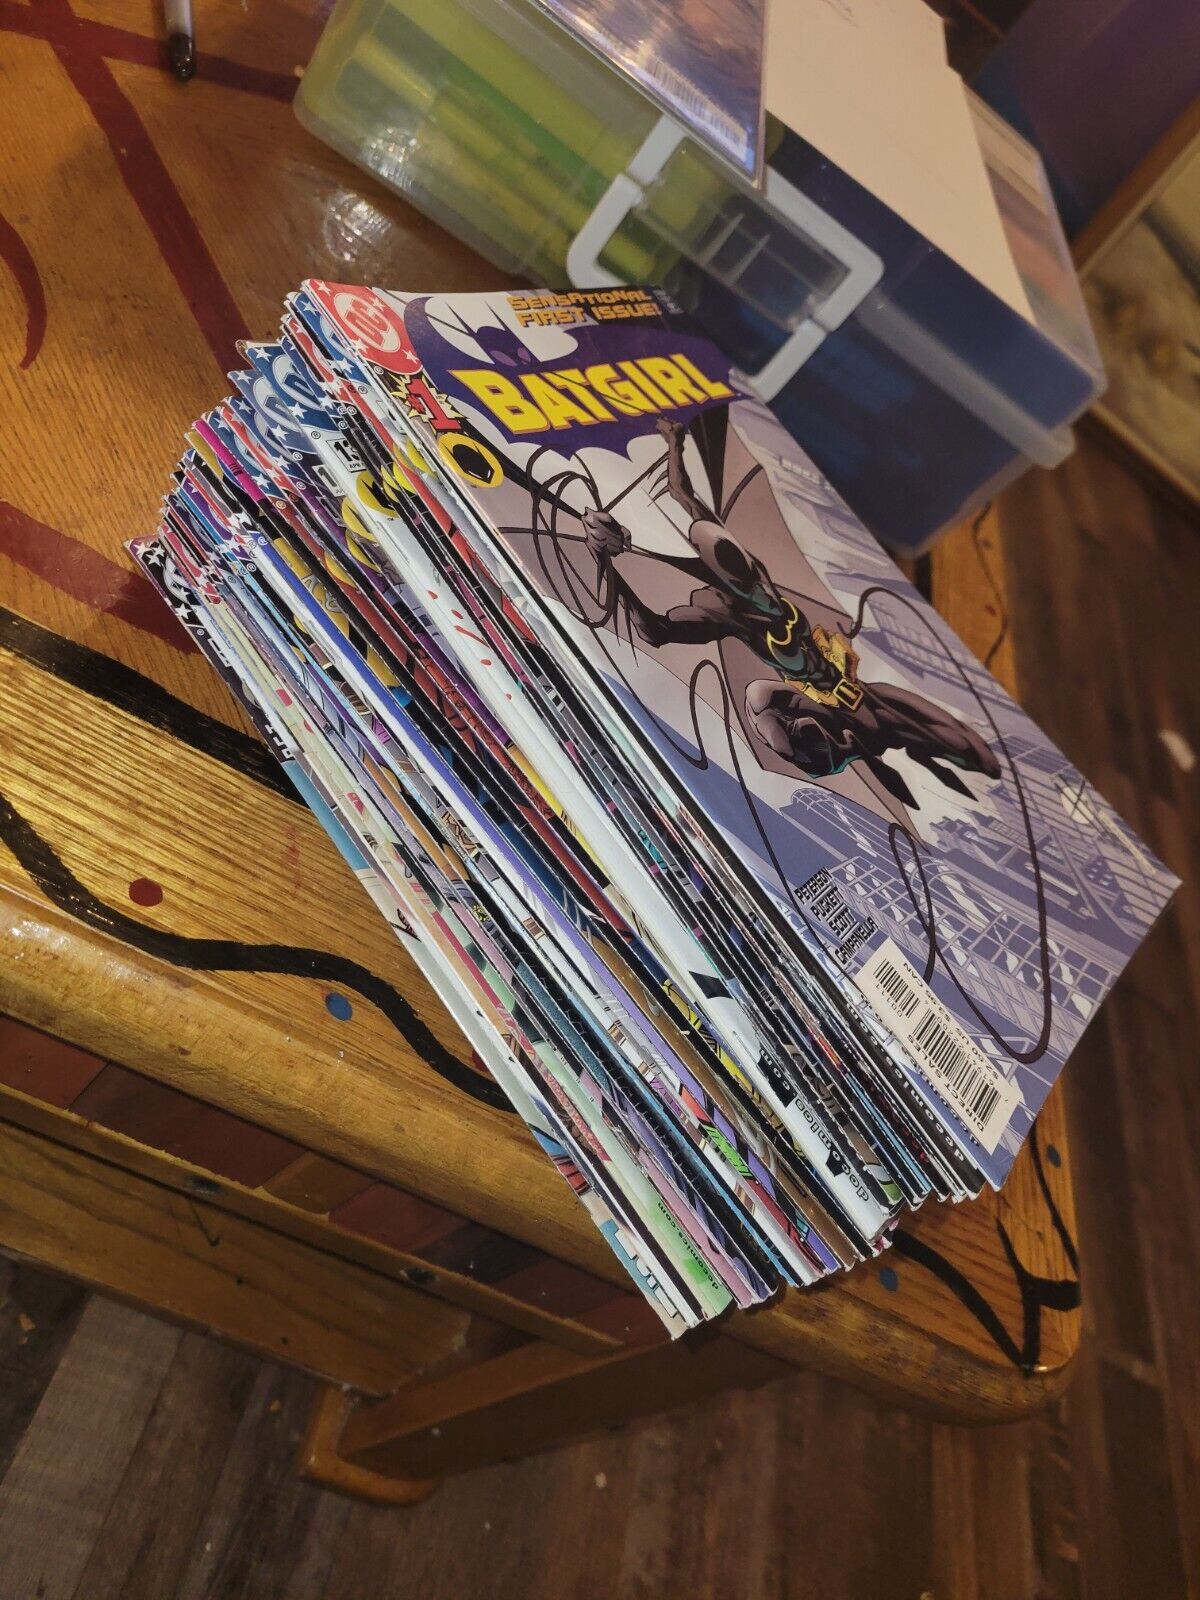 Batgirl vol1 #1-30 april 2000 books great copies